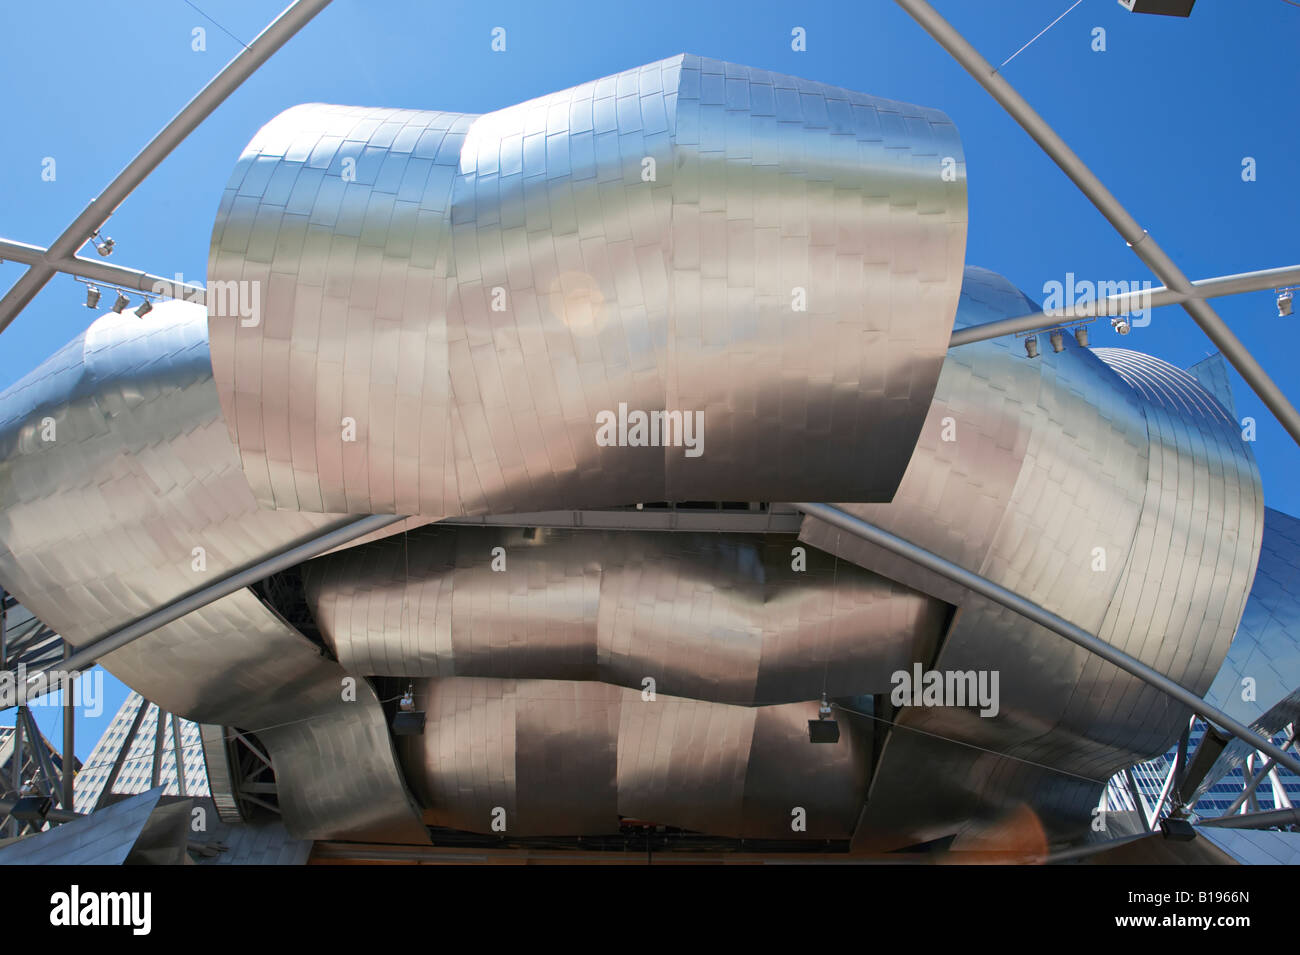 ILLINOIS Chicago Pritzker Pavilion moderna architettura architetto Frank Gehry curvatura dei pannelli di acciaio il Millennium Park Foto Stock